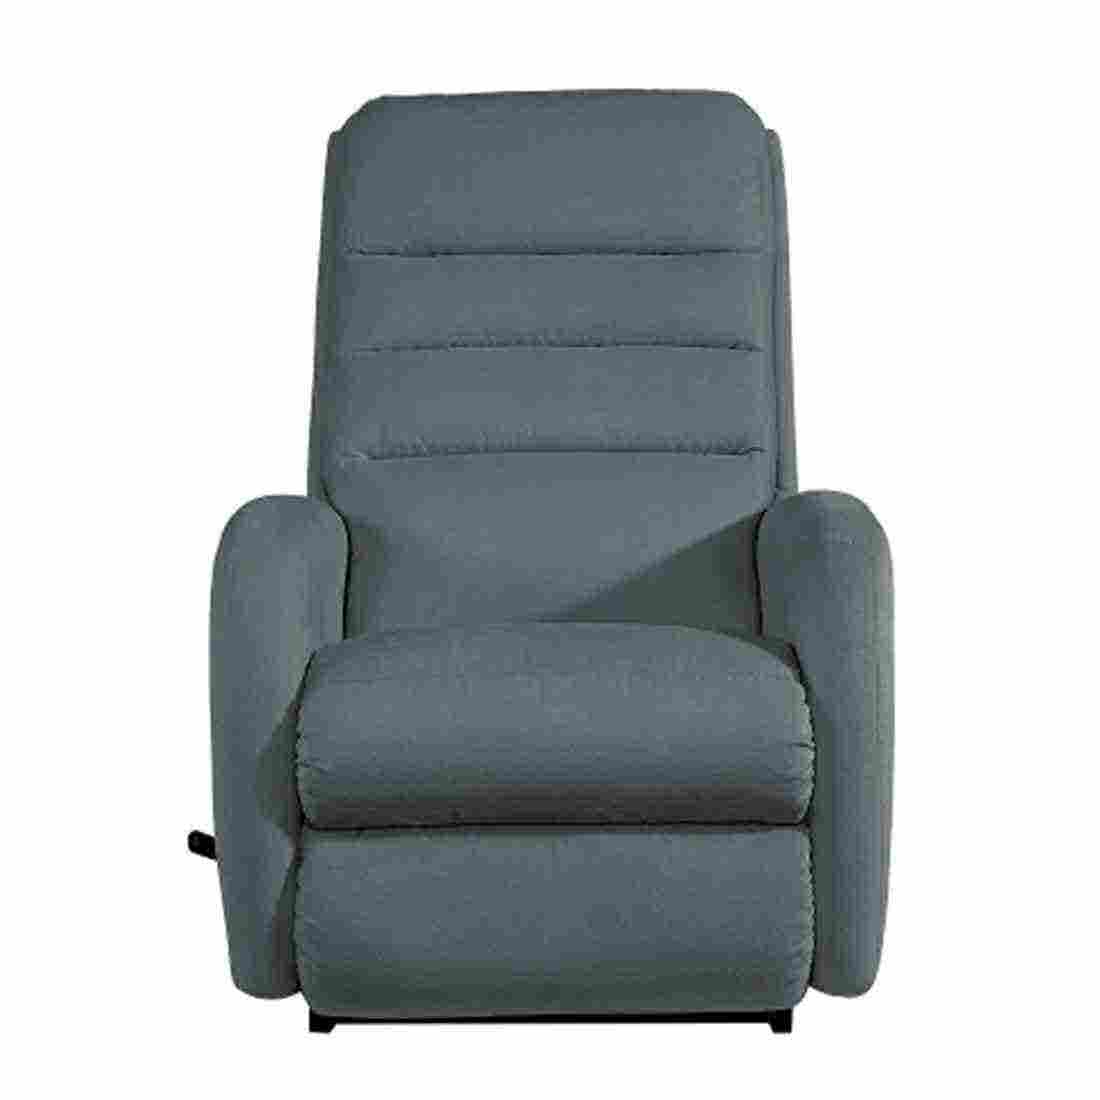 เก้าอี้ปรับเอนนอน La-Z-Boy 10T-744-D-144057 Forum ผ้า i-Clean สี Truffle